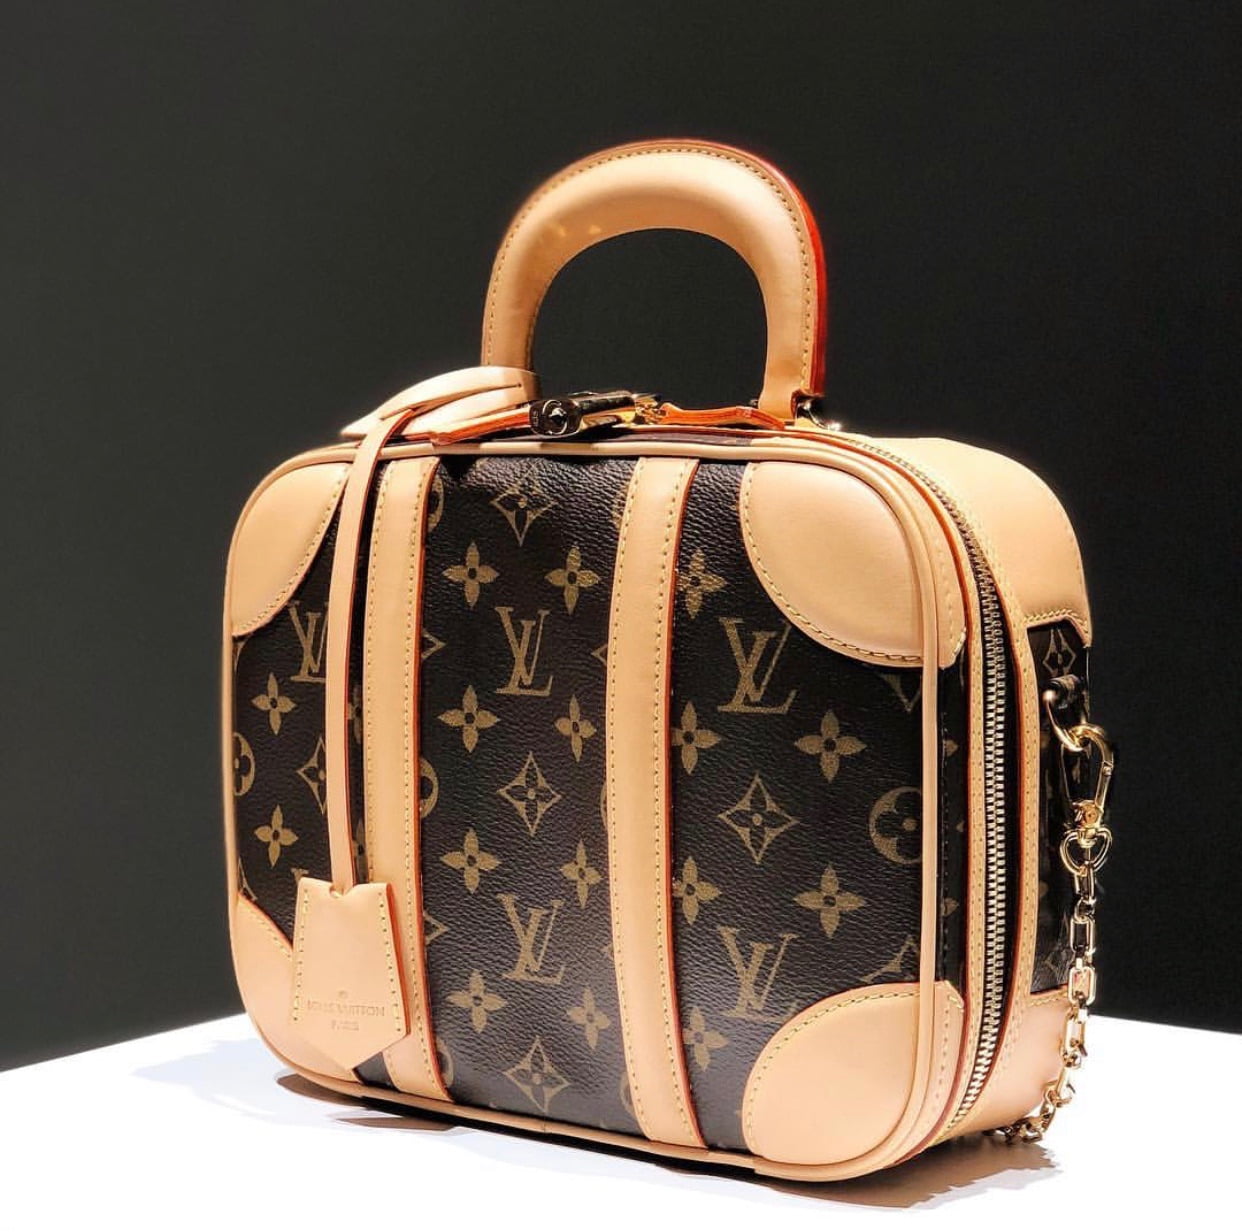 Louis Vuitton Travel Bags Price In Indianapolis | semashow.com